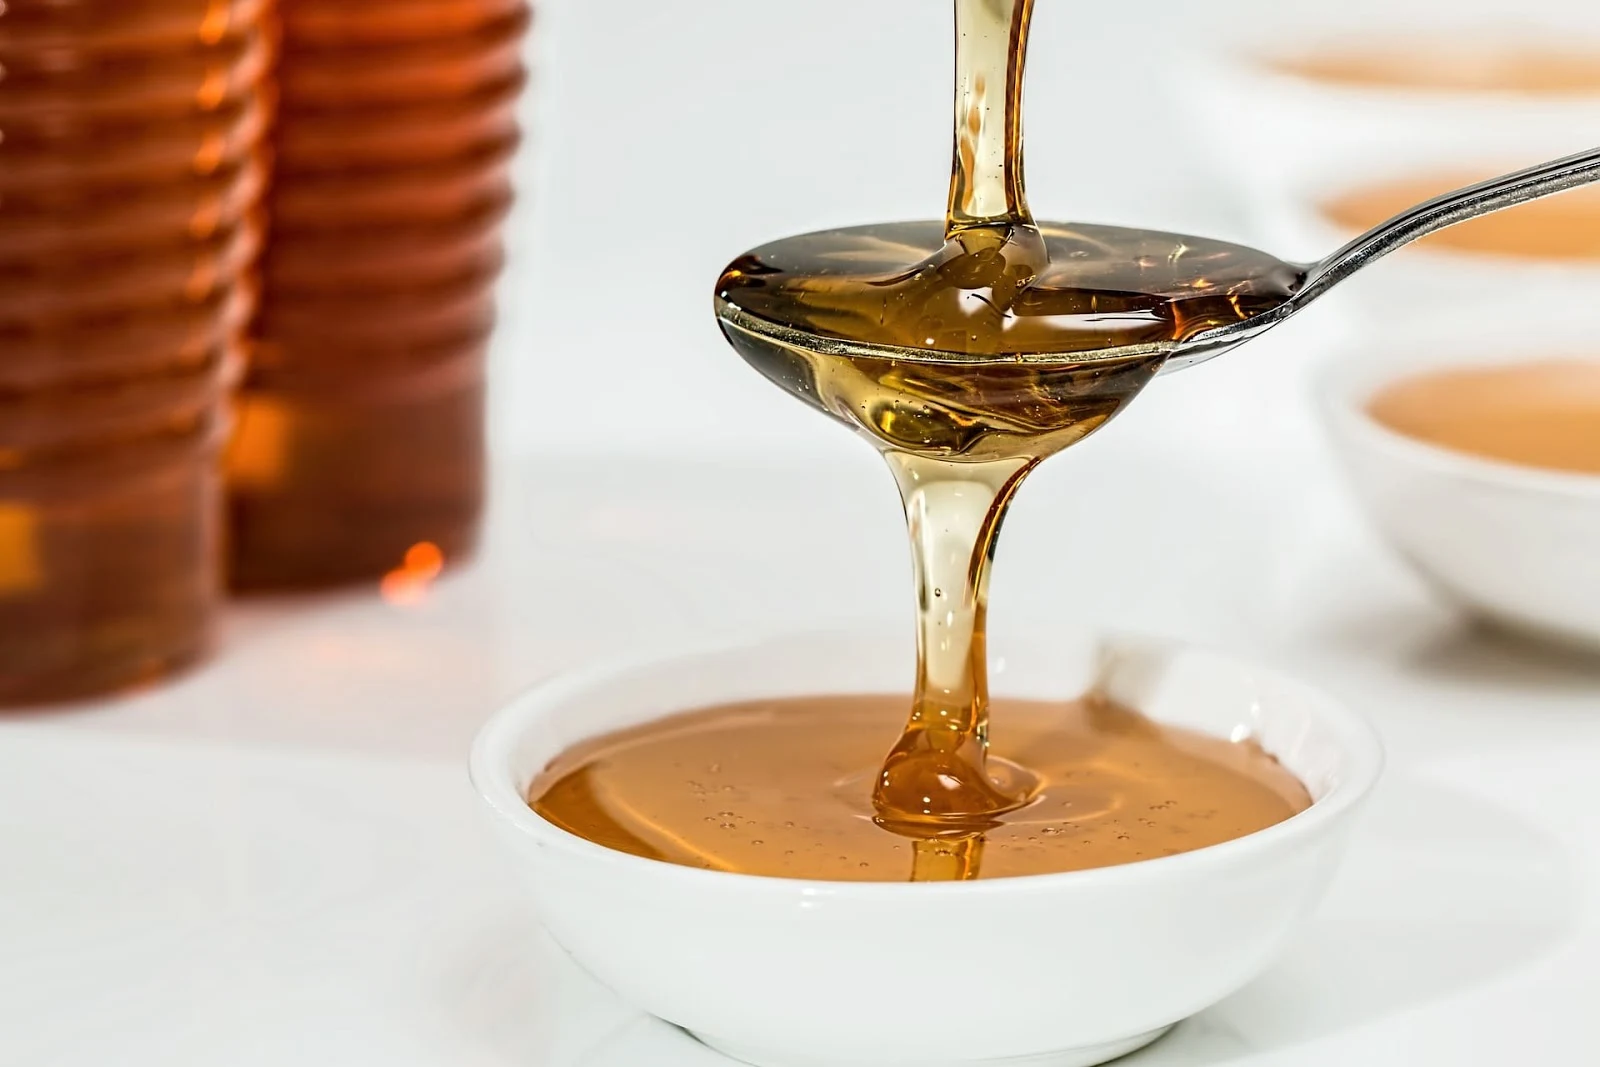 العسل لبياض العين،تجربتي مع العسل للعين،طريقة علاج جفاف العين بالعسل،علاج شبكية العين بالطب البديل،كيفية وضع العسل في العين،